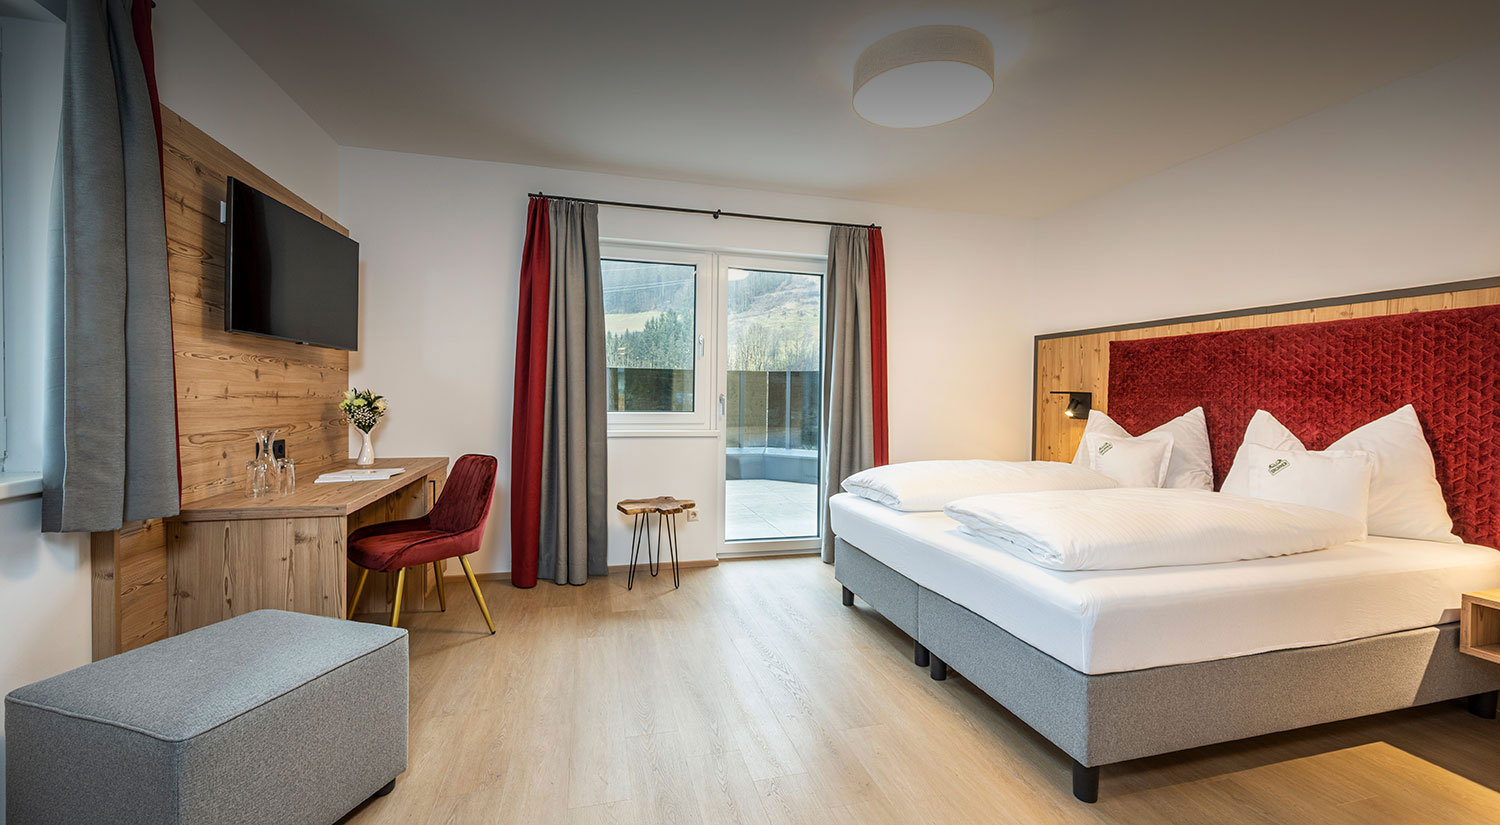 Doppelzimmer im Hotel Brunner in Gleiming an der Reiteralm